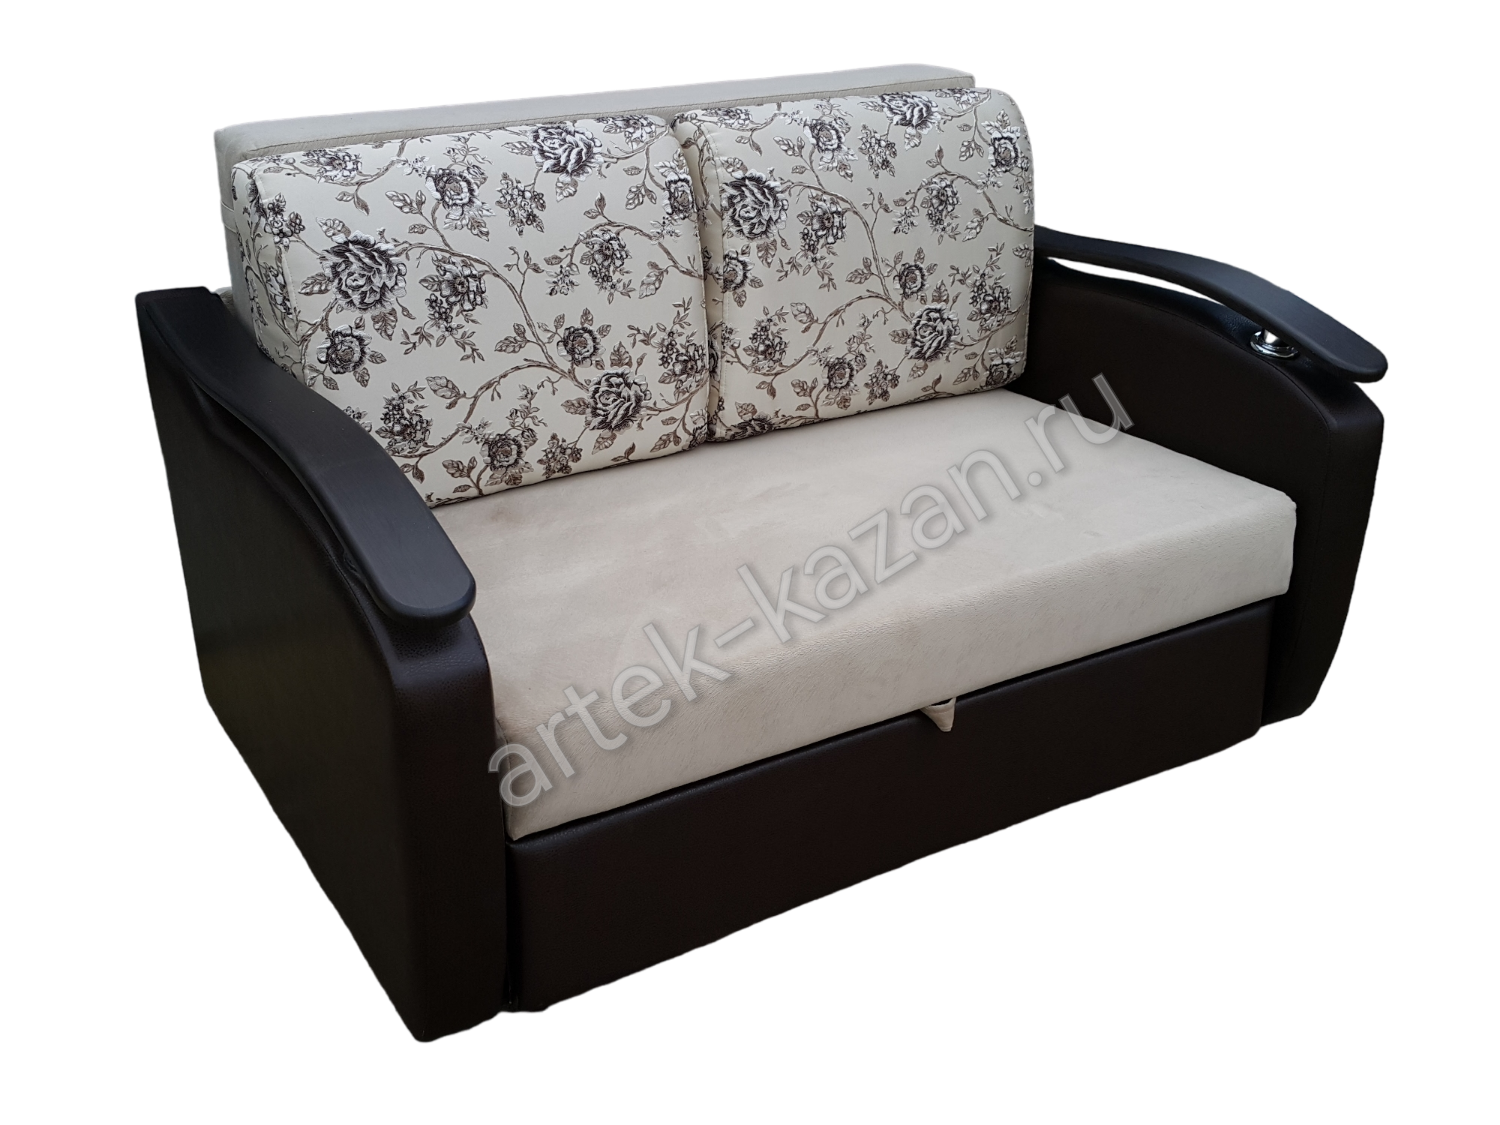 Мини диван на выкатном механизме Миник фото № 20. Купить недорогой диван по низкой цене от производителя можно у нас.